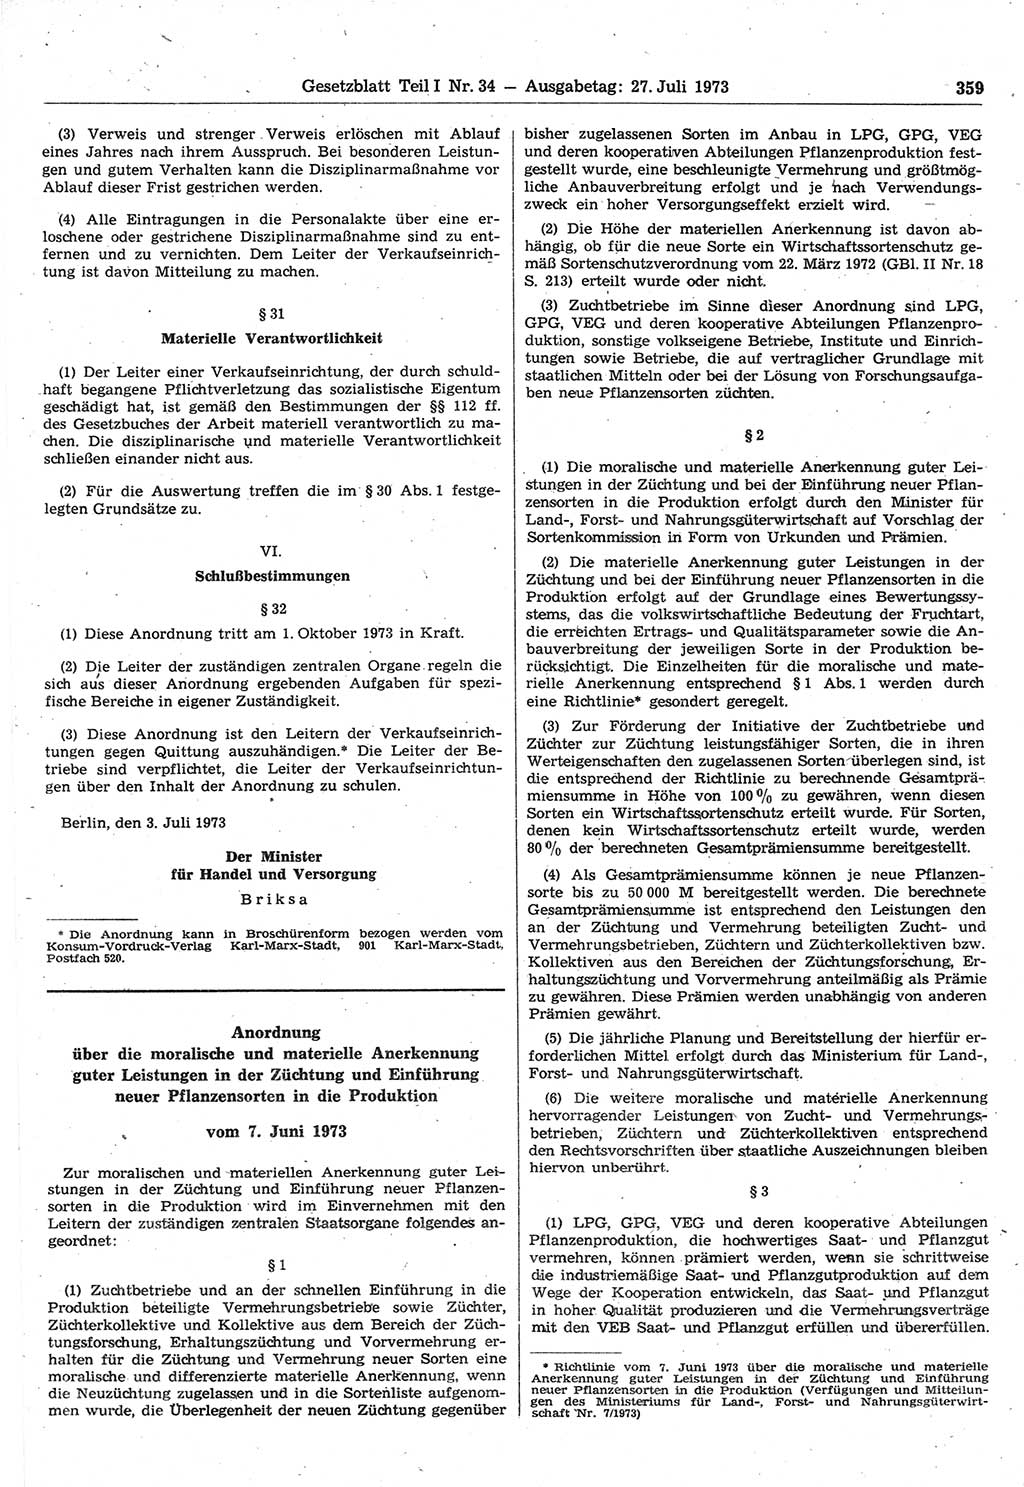 Gesetzblatt (GBl.) der Deutschen Demokratischen Republik (DDR) Teil Ⅰ 1973, Seite 359 (GBl. DDR Ⅰ 1973, S. 359)